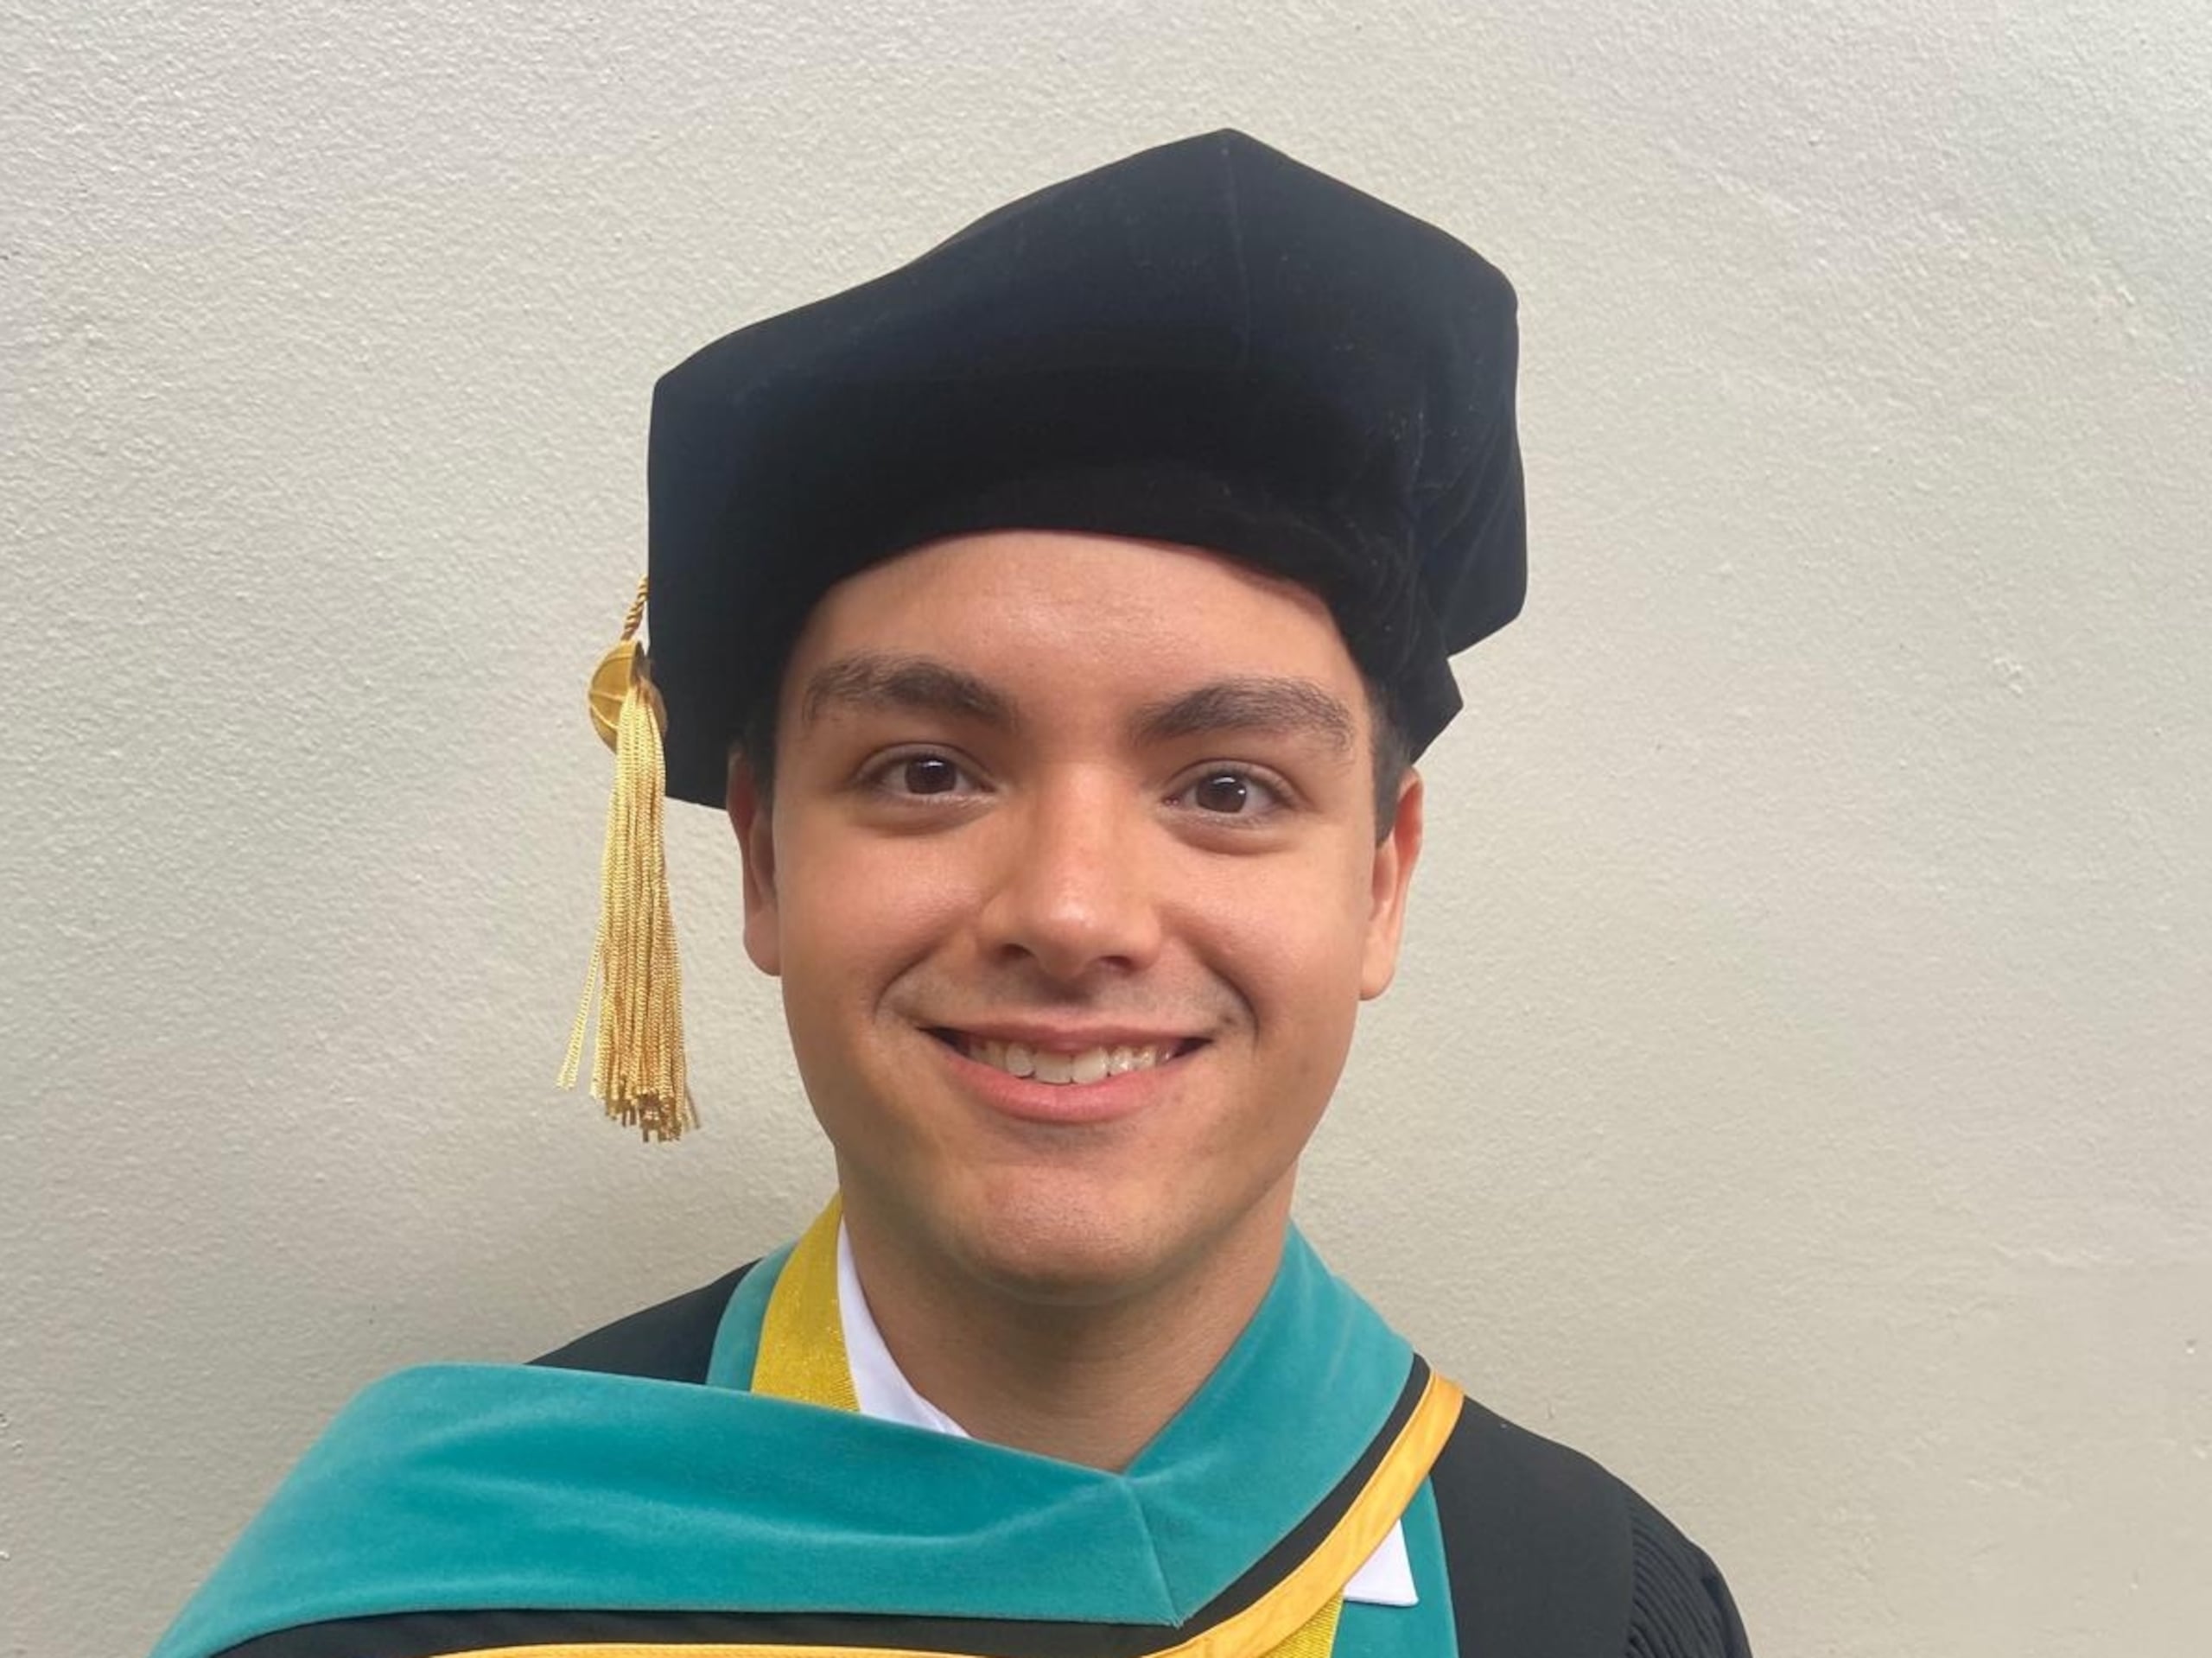 Dr. Héctor Báez, recién graduado del Programa de Audiología del Recinto de Ciencias Médicas. El doctor fue diagnosticado con Asperger a los 19 años mientras cursaba estudios universitarios.